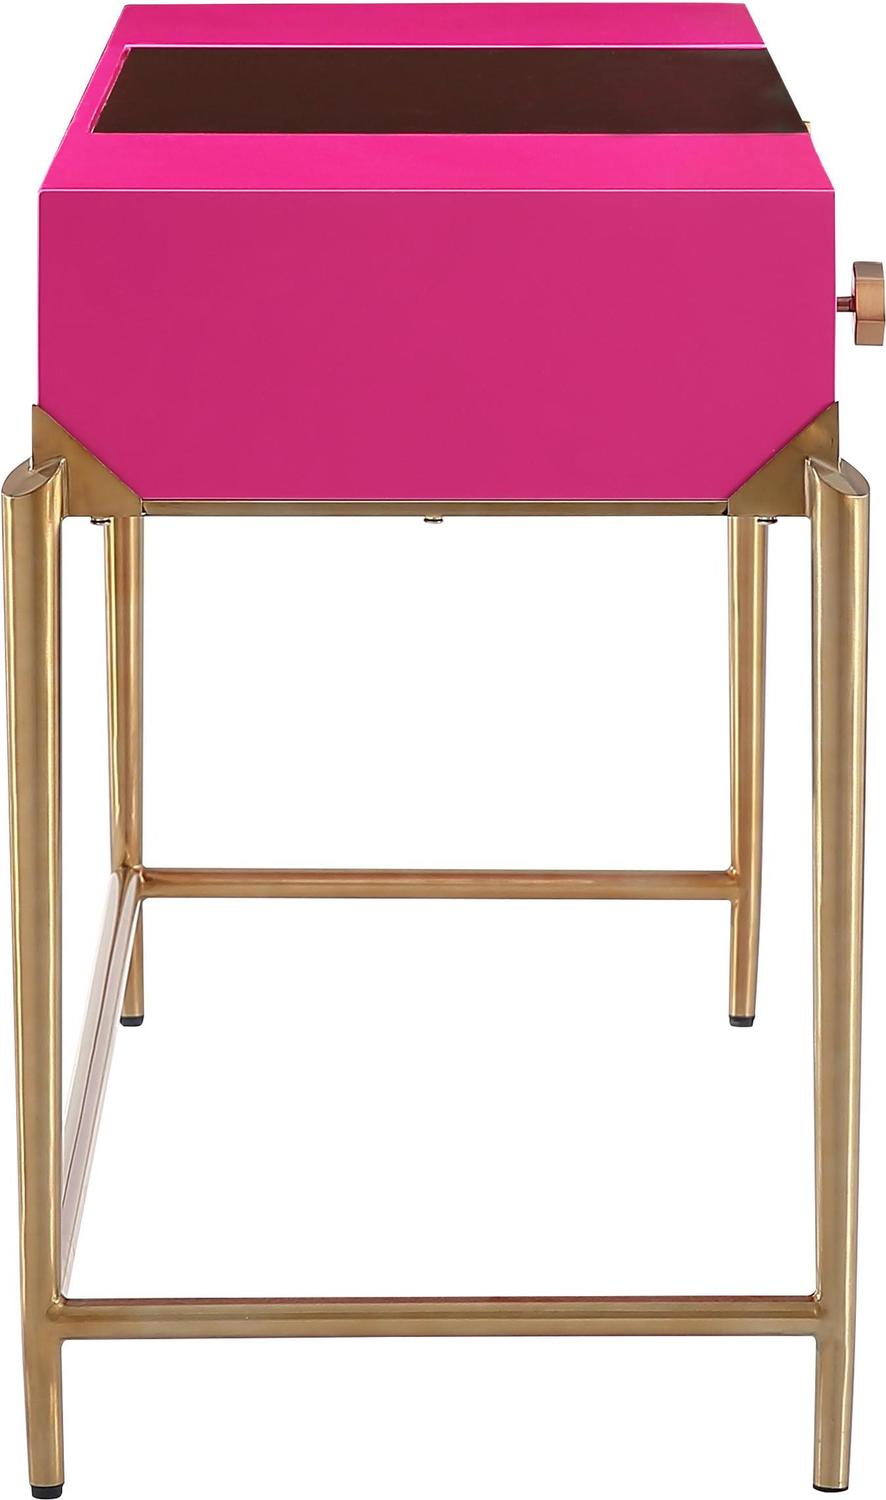 natural desk chair Tov Furniture Desks Pink